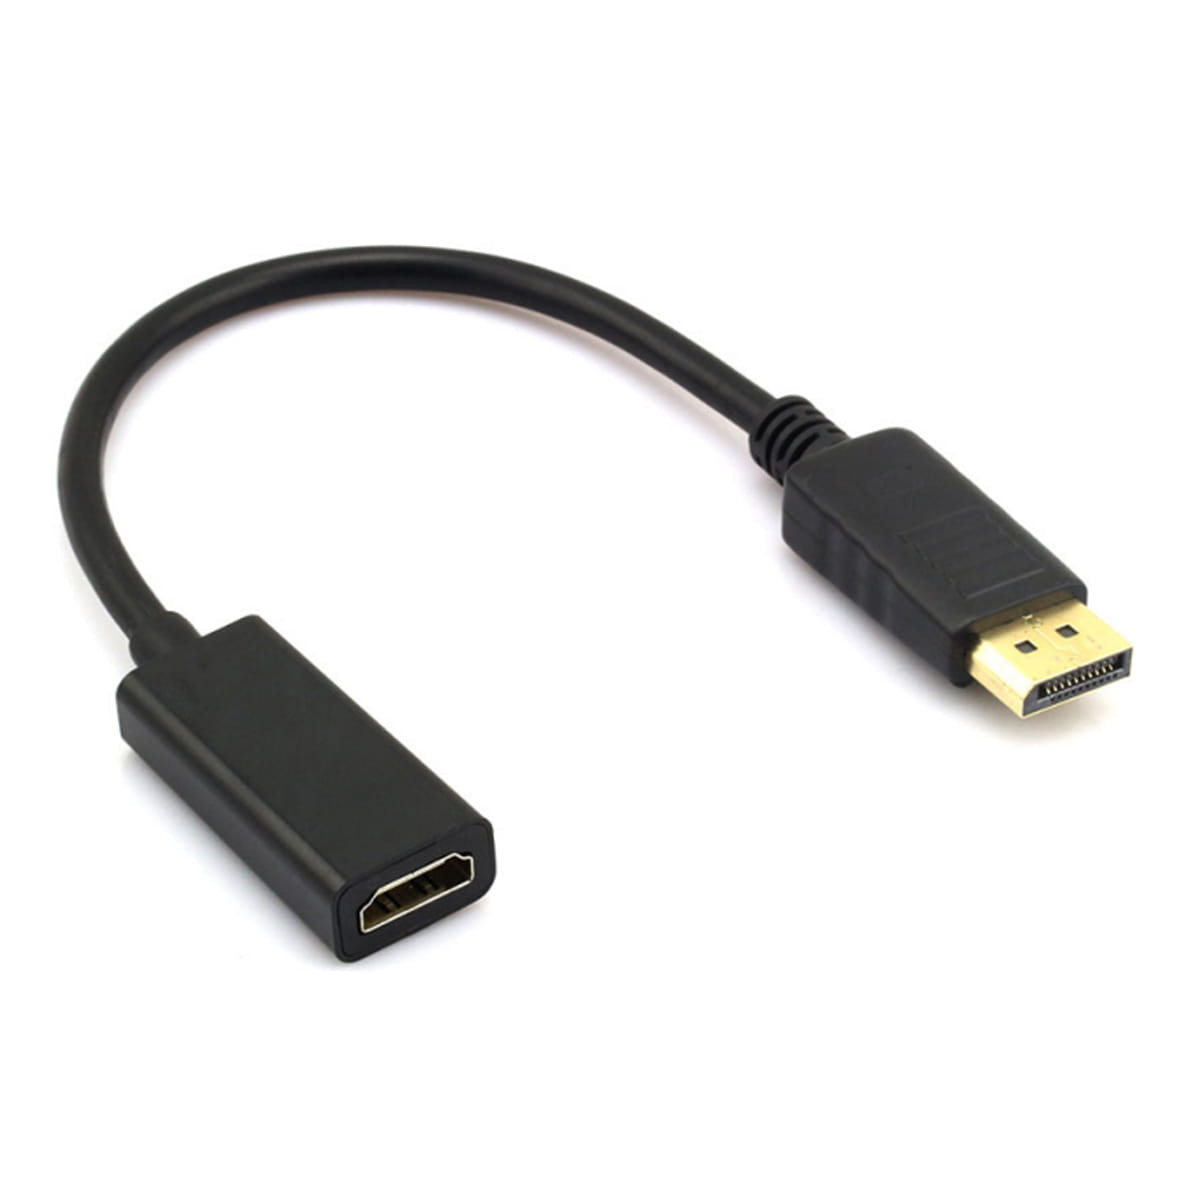 Câble Adaptateur HDMI Mâle vers HDMI Mâle 120cm Noir Cord Adapter